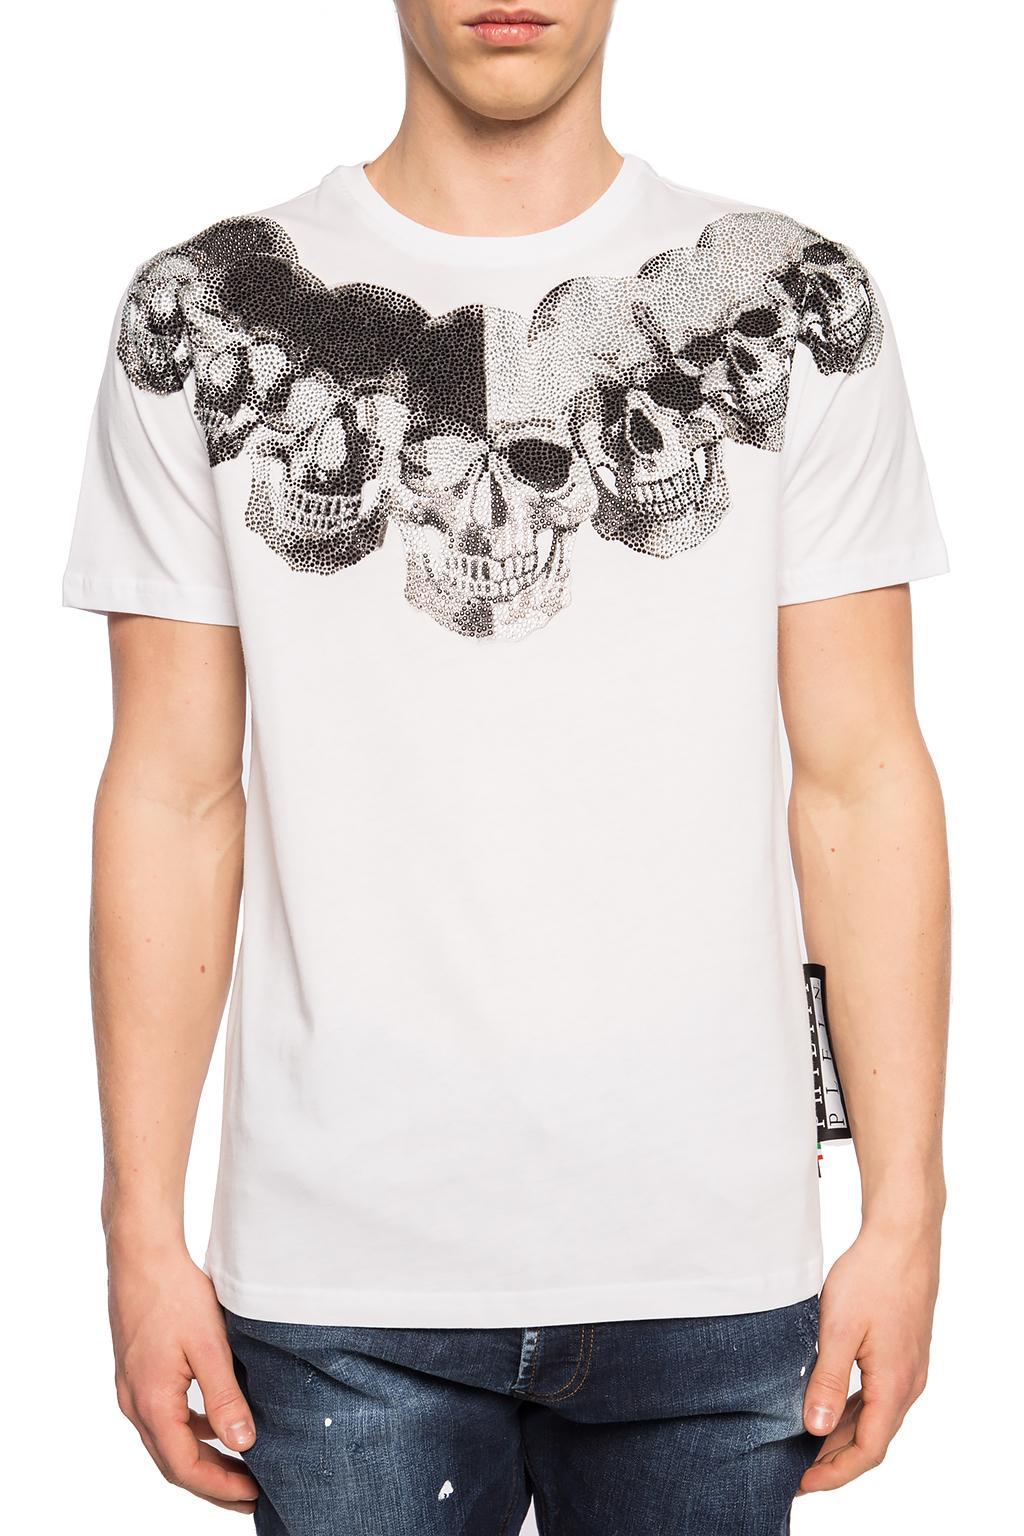 Philipp Plein Cotton Skull Print T-shirt in White for Men - Lyst